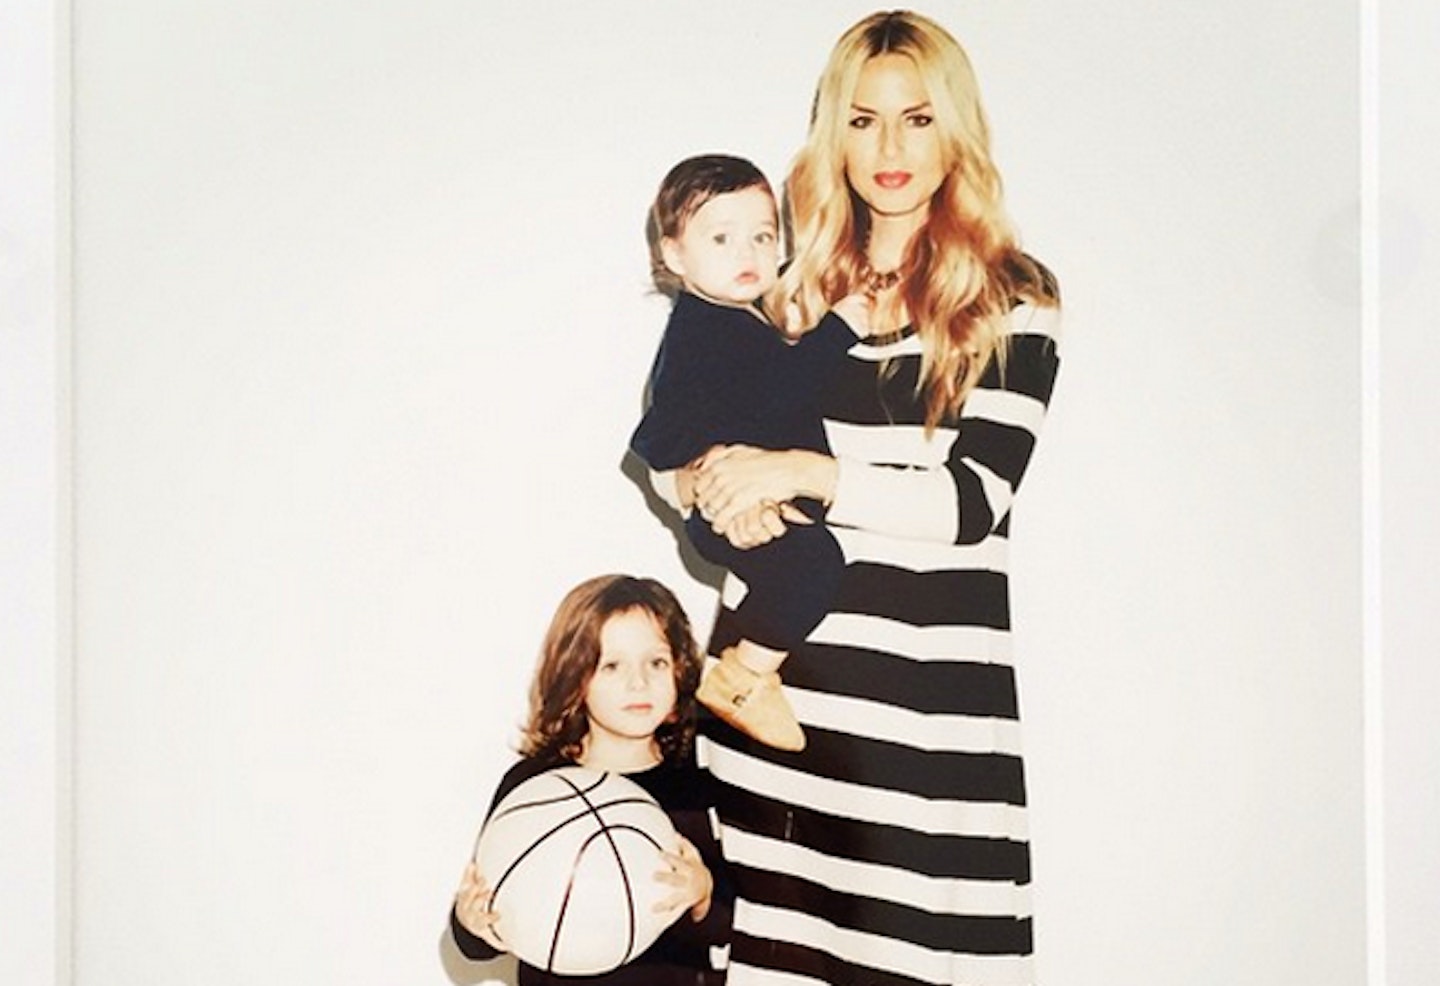 Rachel Zoe with her children, from Instagram